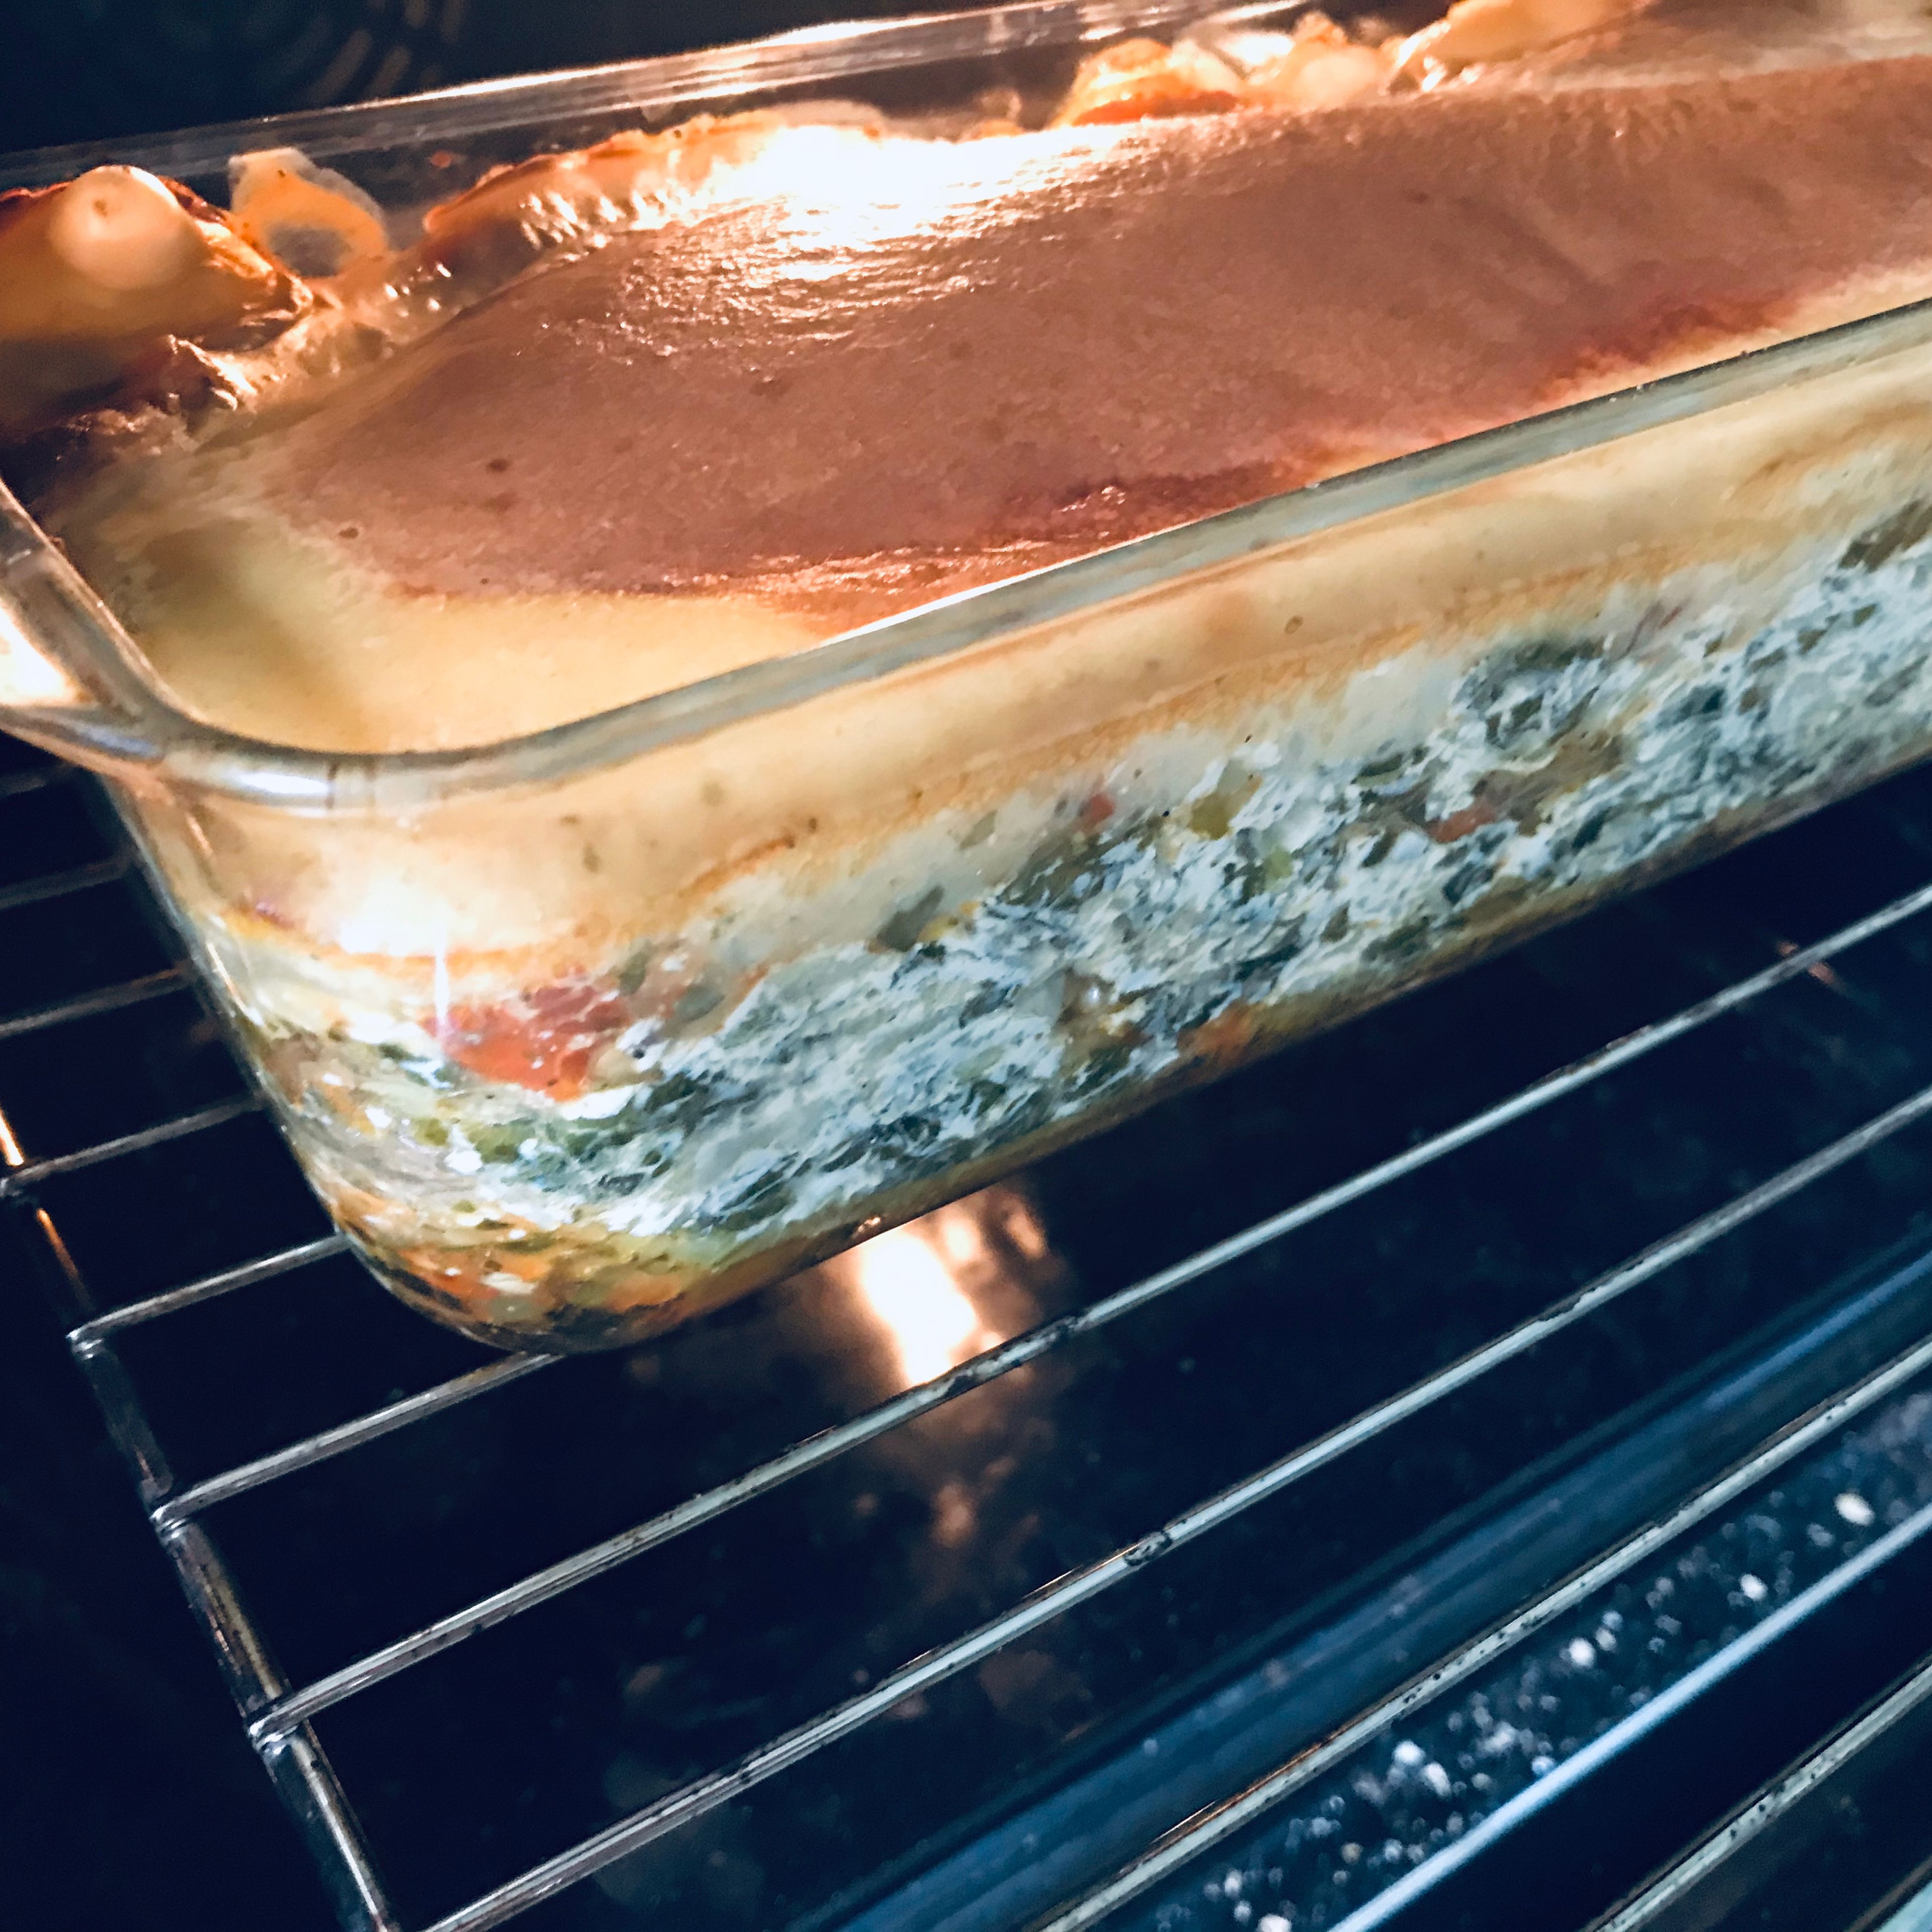 Sobald die Lasagne fertig ist, aus dem Ofen nehmen und ca. 15min abkühlen lassen, damit sie nicht beim schneiden zerfließt.